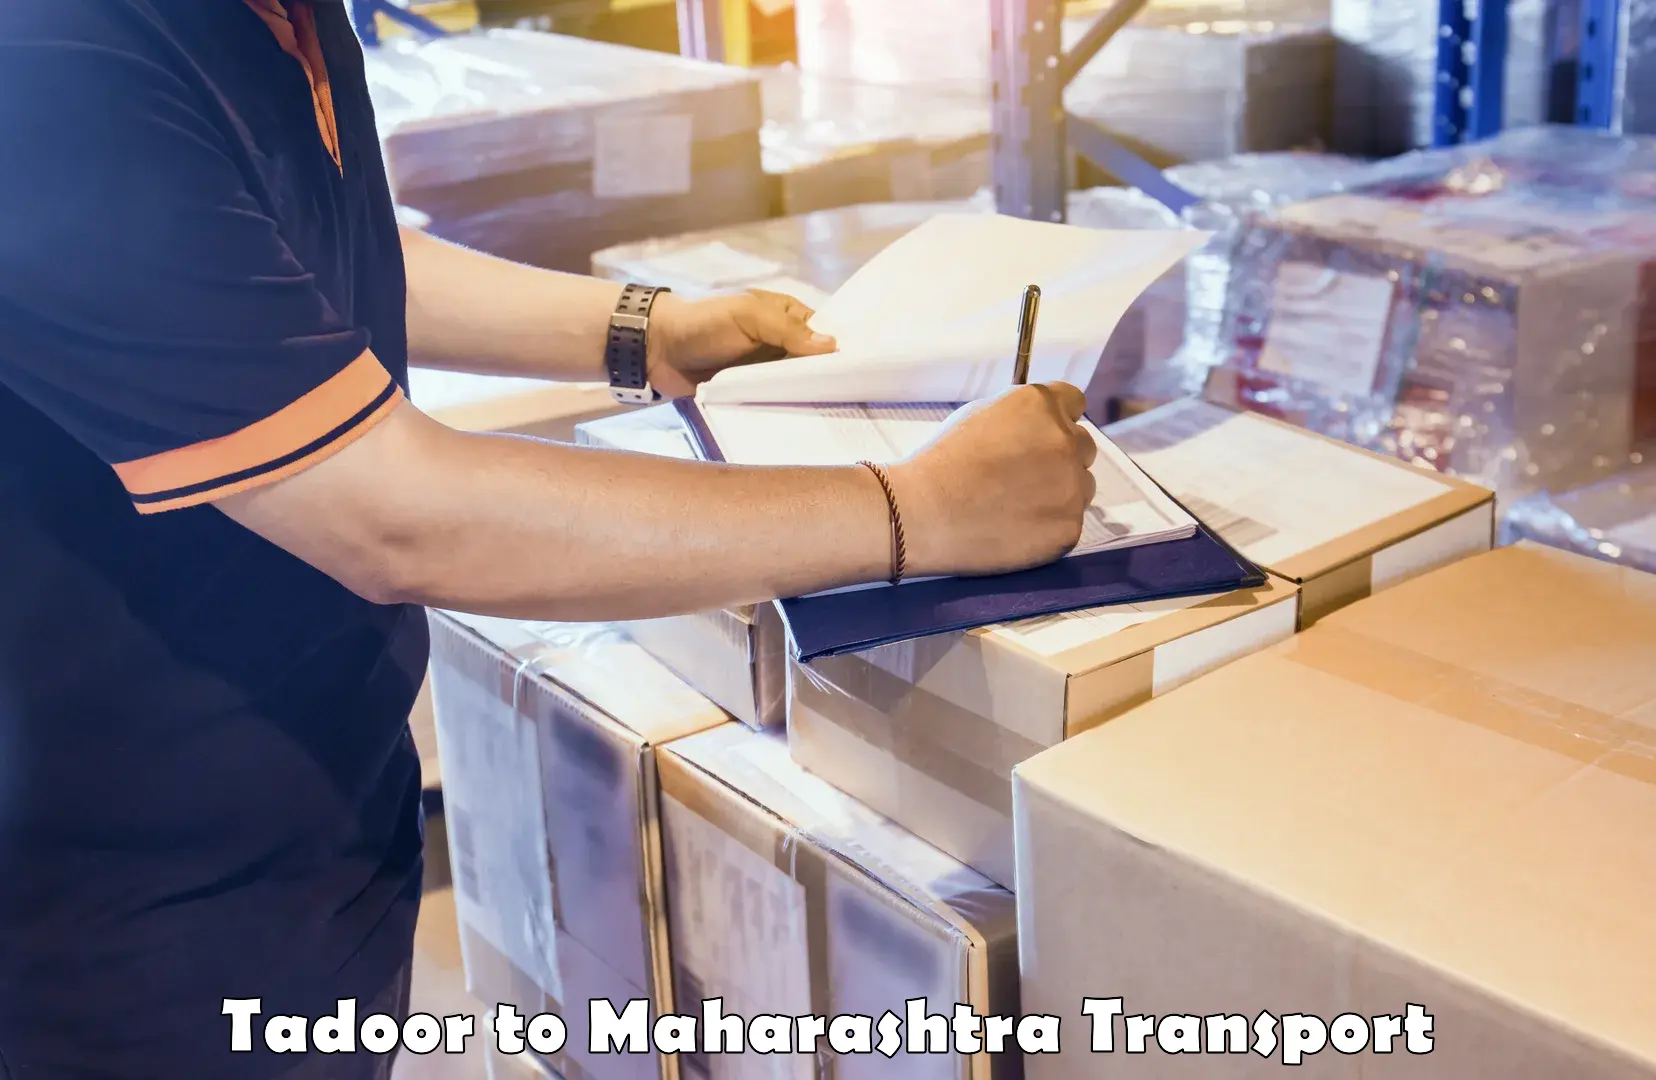 Cargo transport services Tadoor to Maharashtra